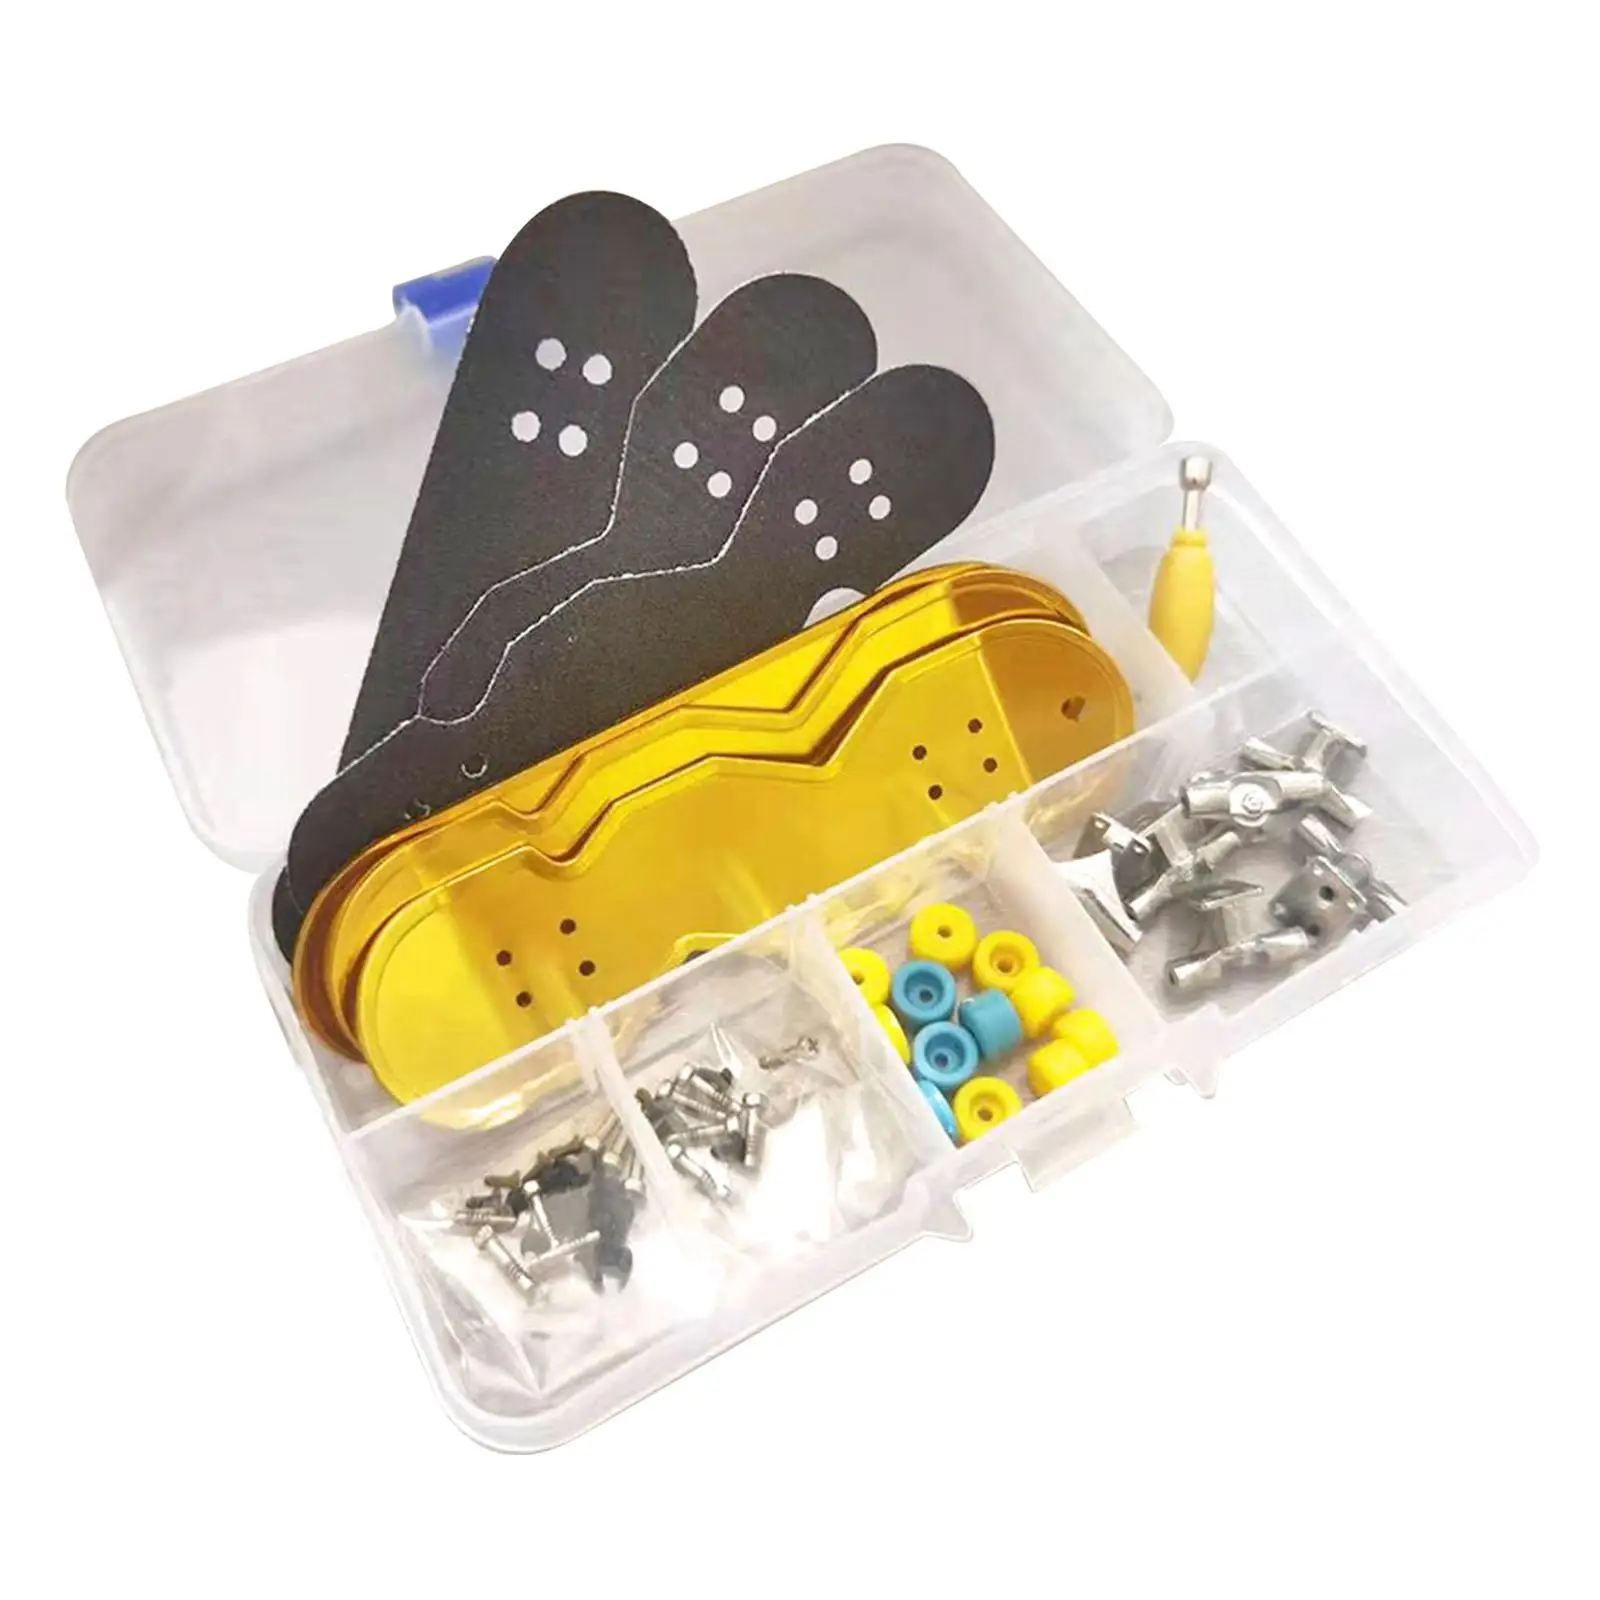 Mini Finger Skating Board Sport Toy Set Child DIY Assembly Kit Adult Kids